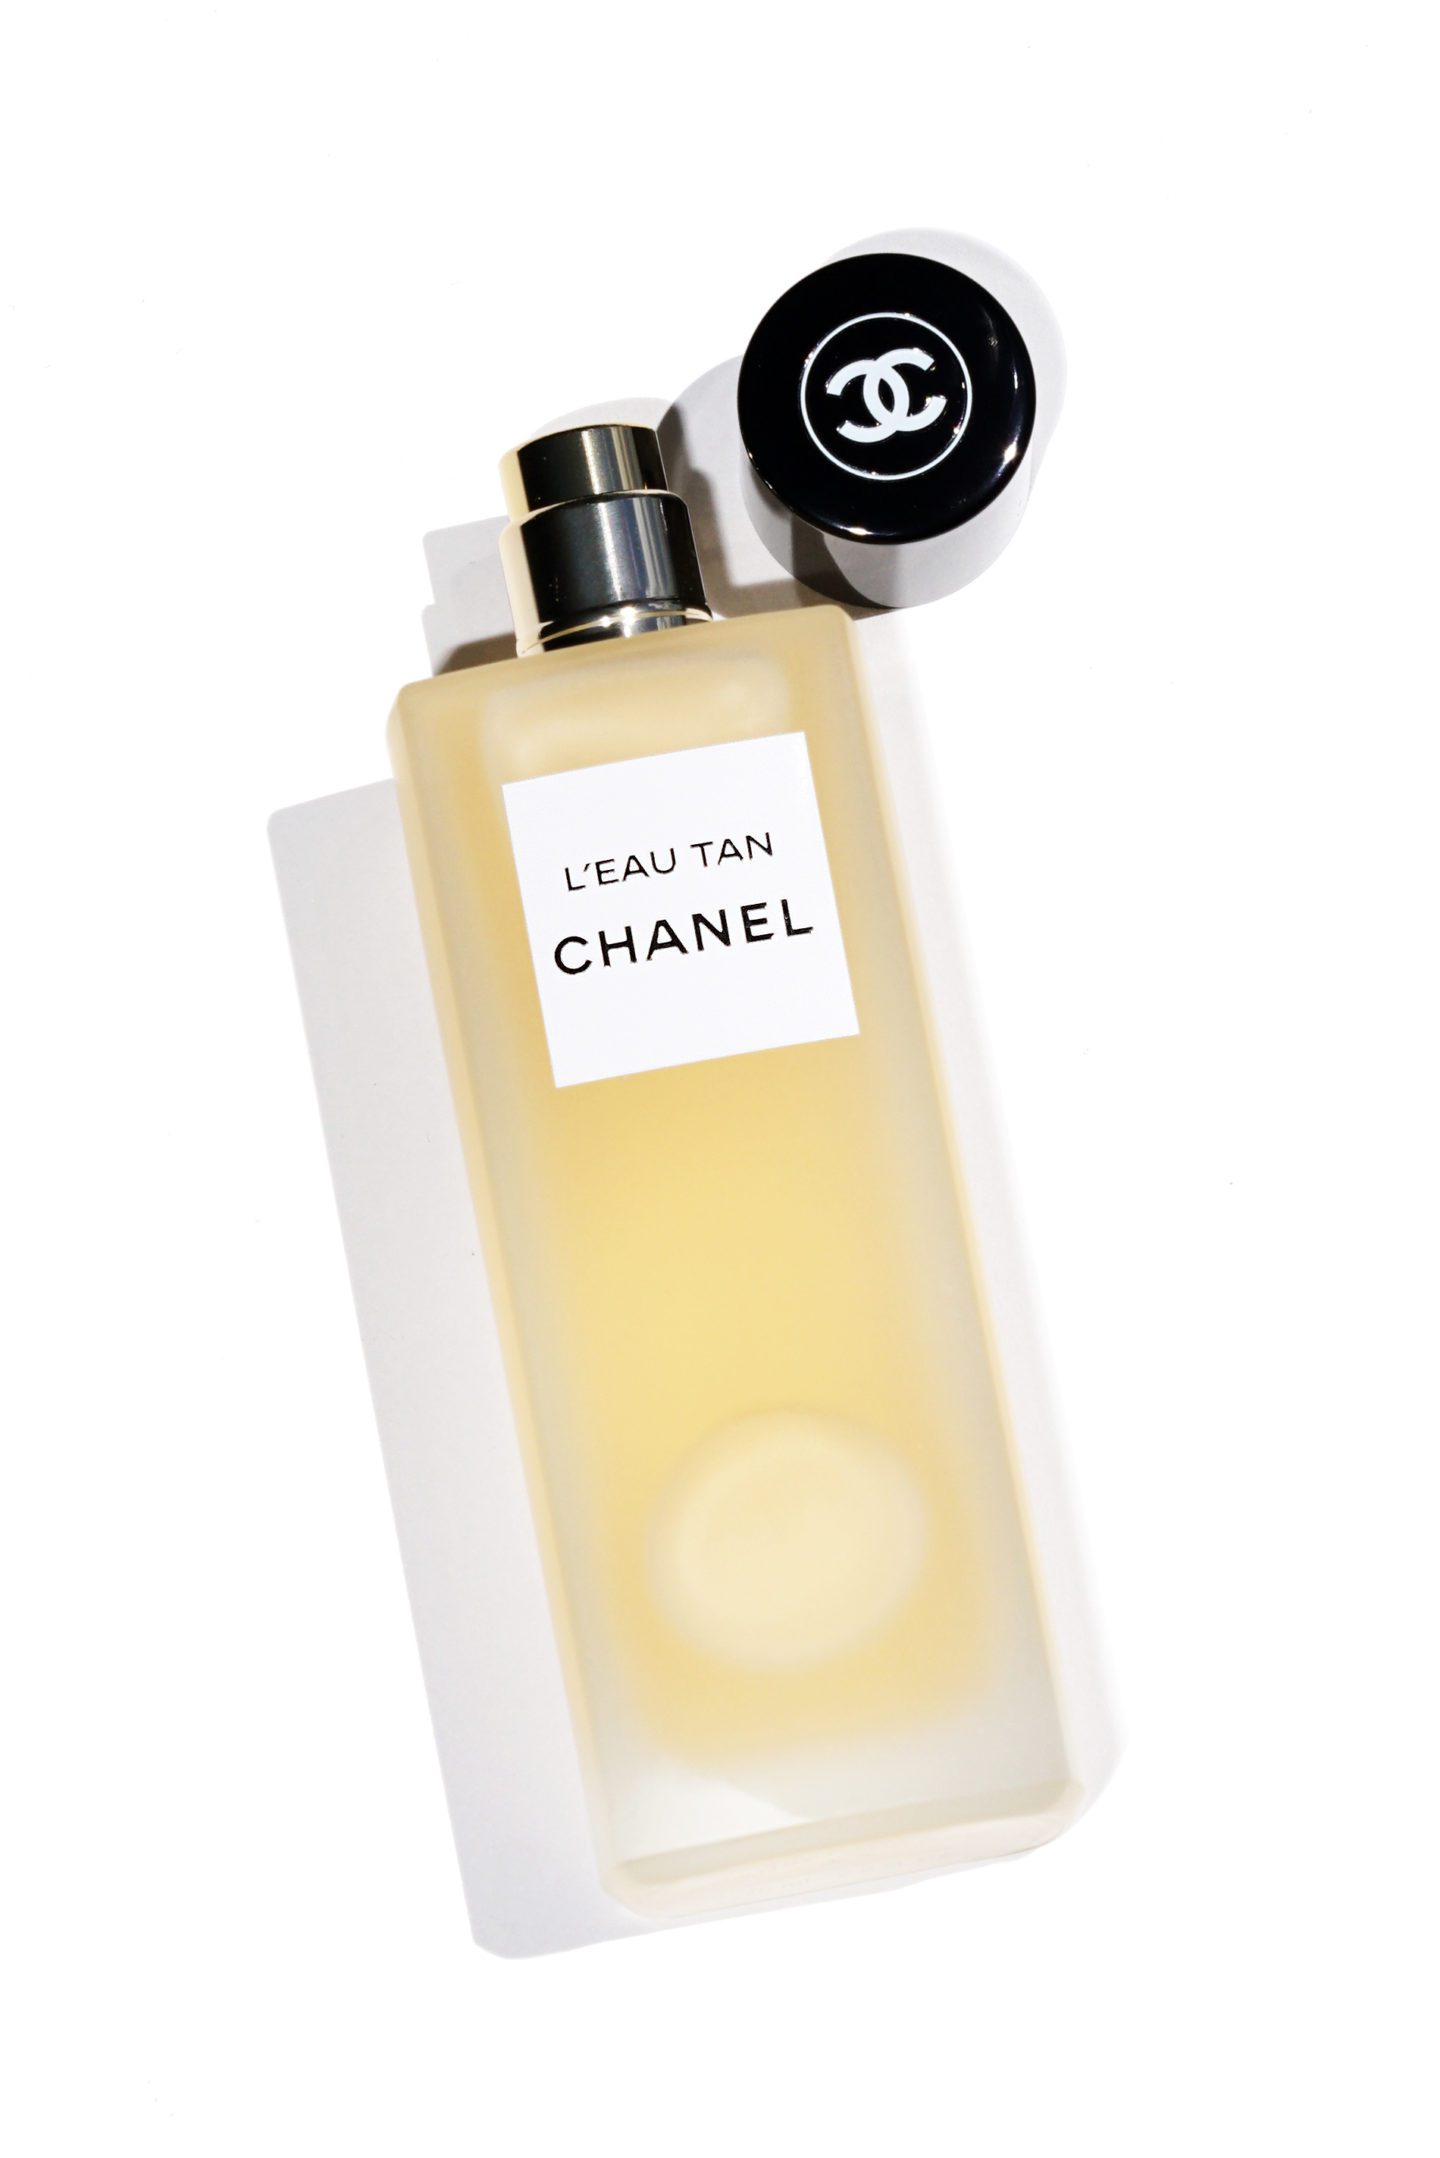 Chanel L'Eau Tan Chanel Spray